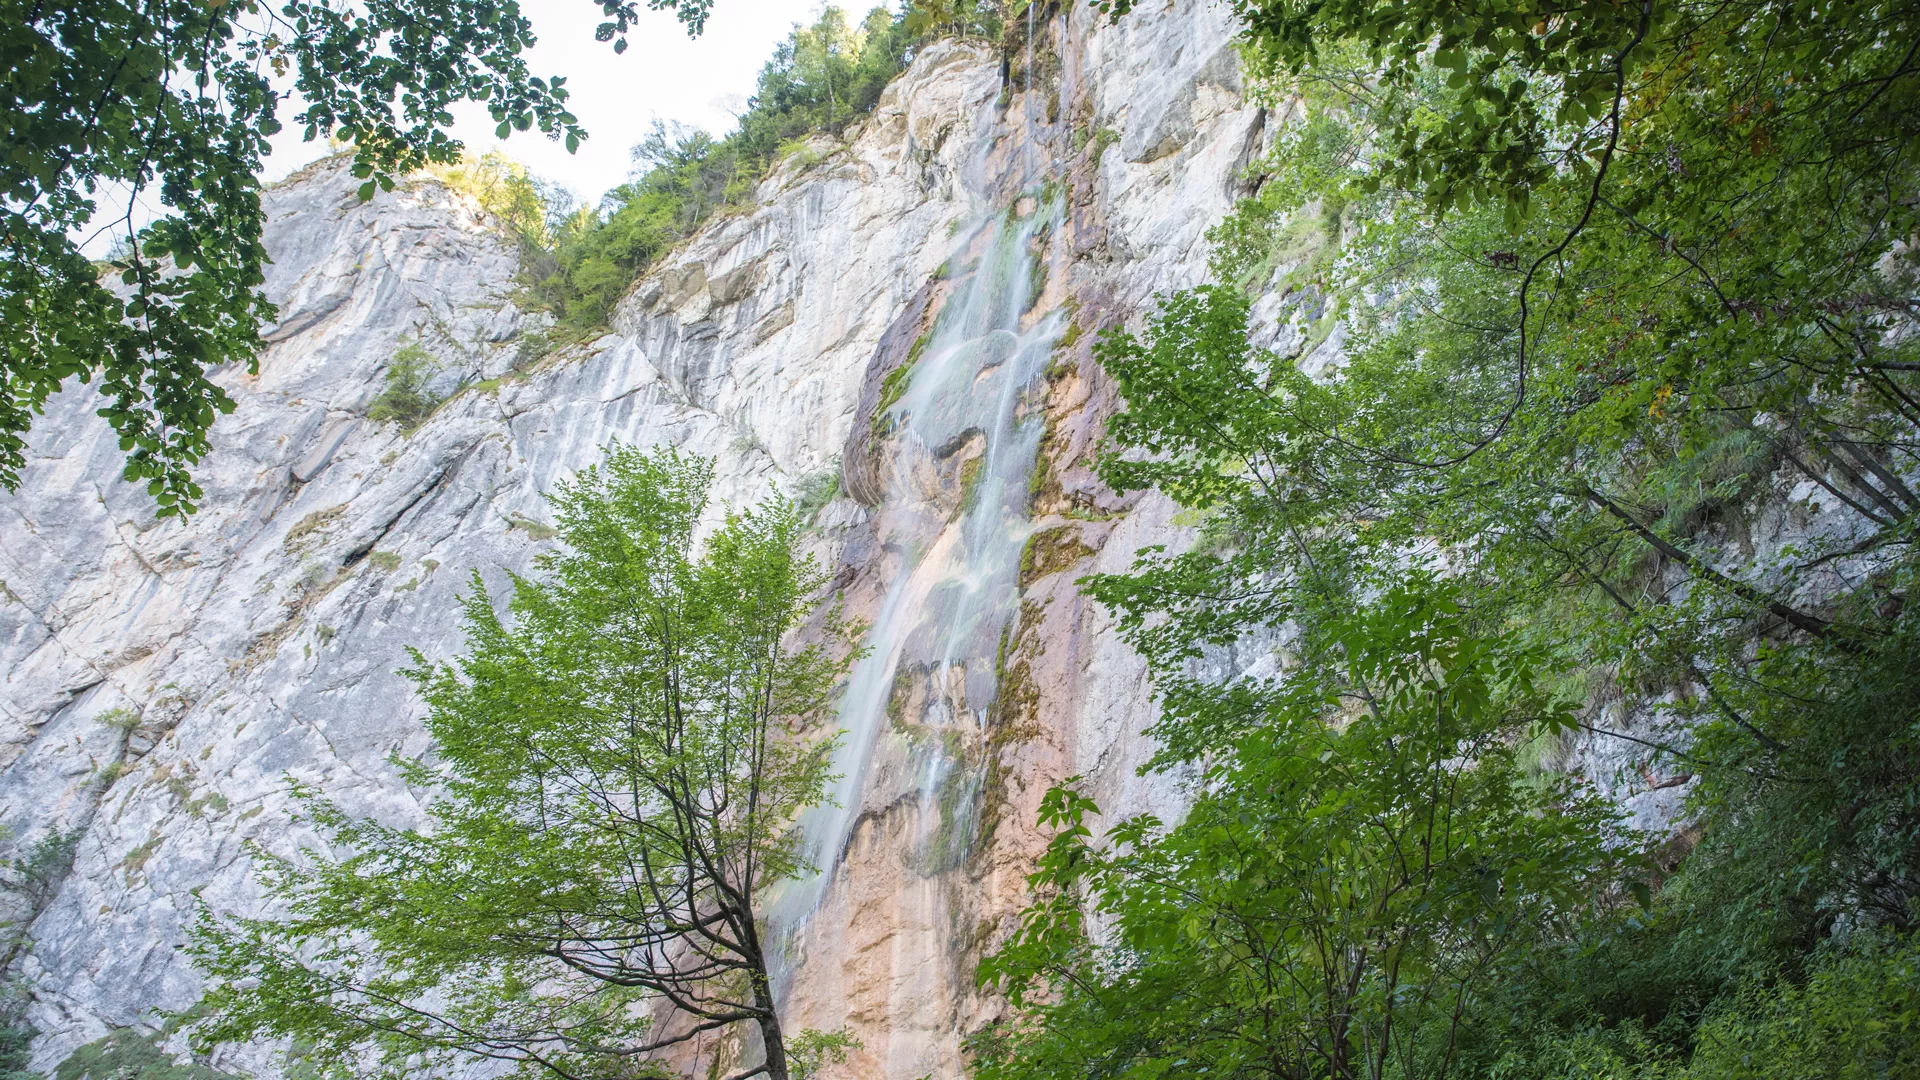 Nahorevo-Skakavac in Bosnia and Herzegovina, Europe | Waterfalls,Trekking & Hiking - Rated 3.5